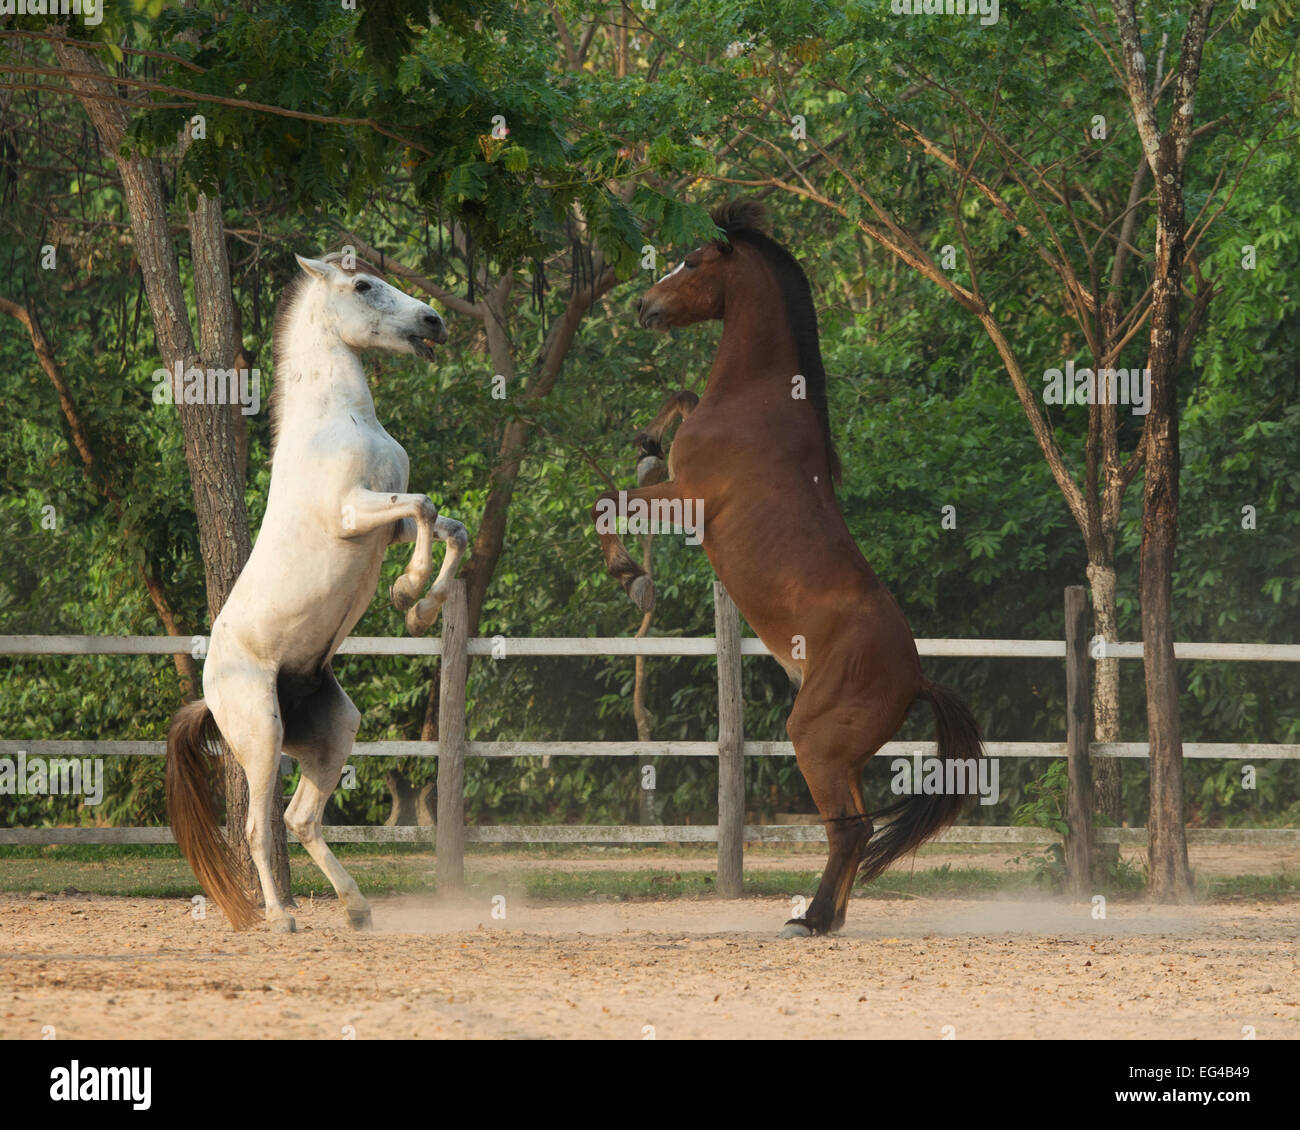 Zwei kambodschanische Pony Hengste spielen kämpfen auf Hinterbeine Siem Reap Kambodscha Aufzucht. März 2013 Stockfoto